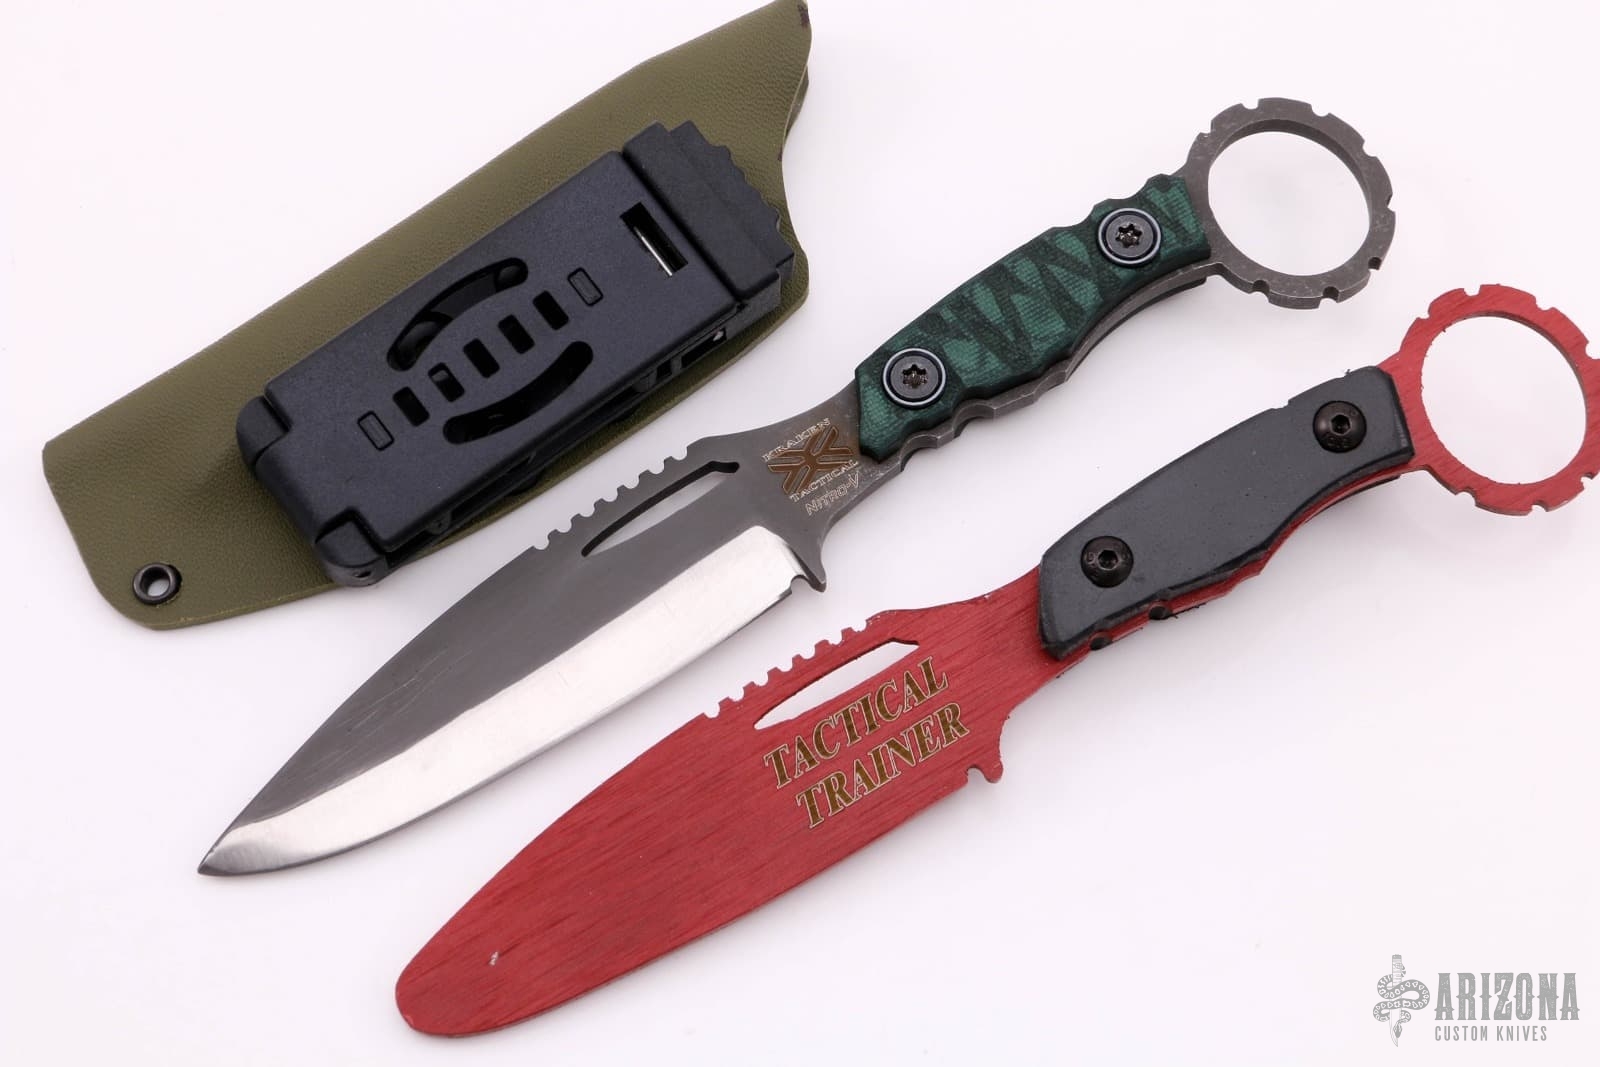 RETAC201-30 Tactical Knife Sharpener